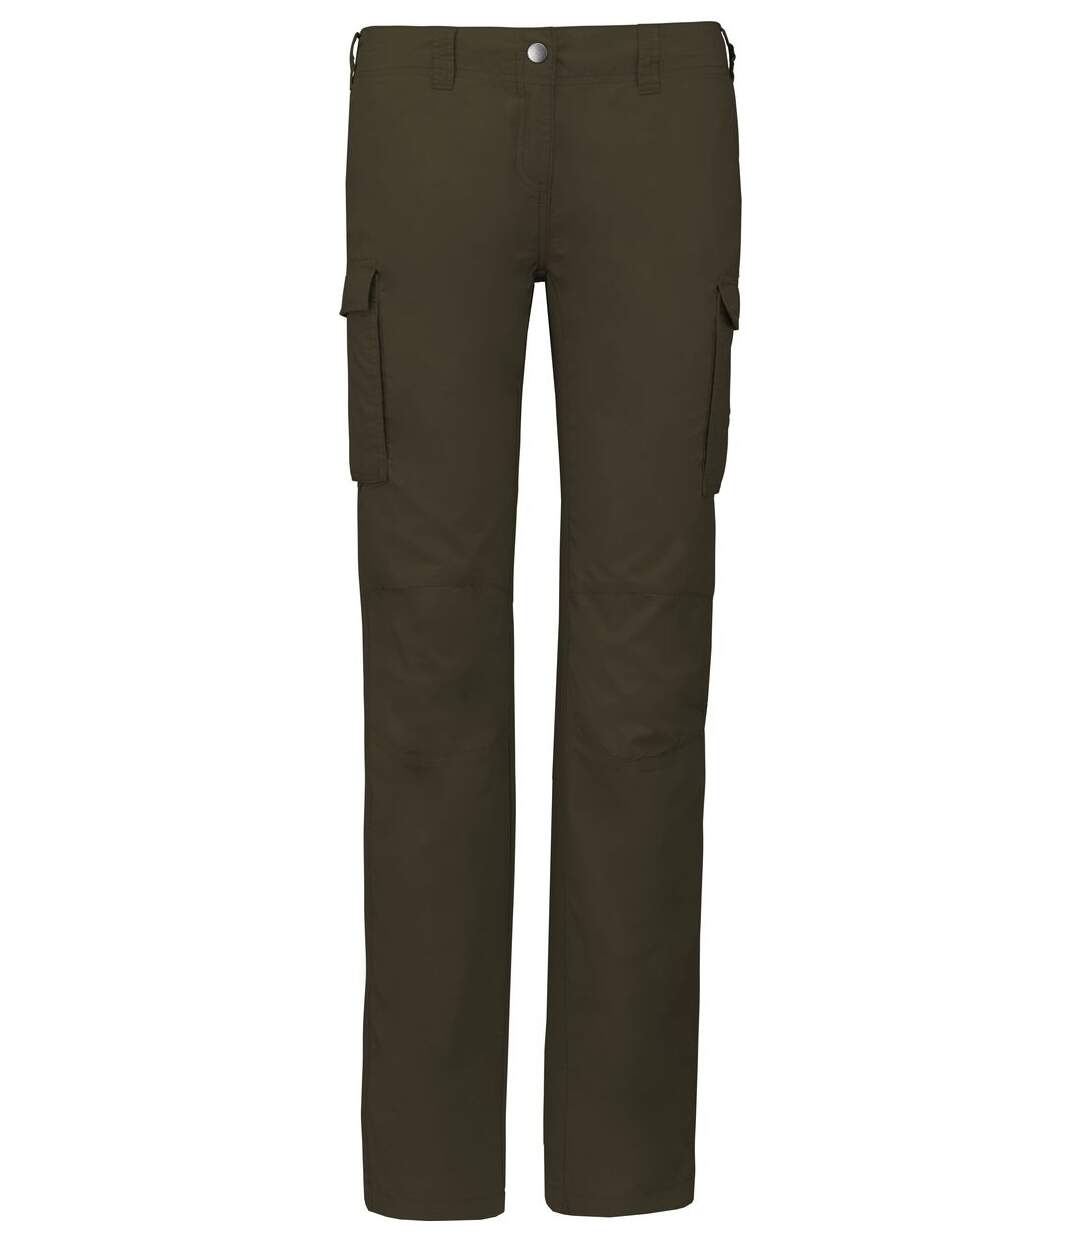 Pantalon léger multipoches pour femme - K746 - vert khaki